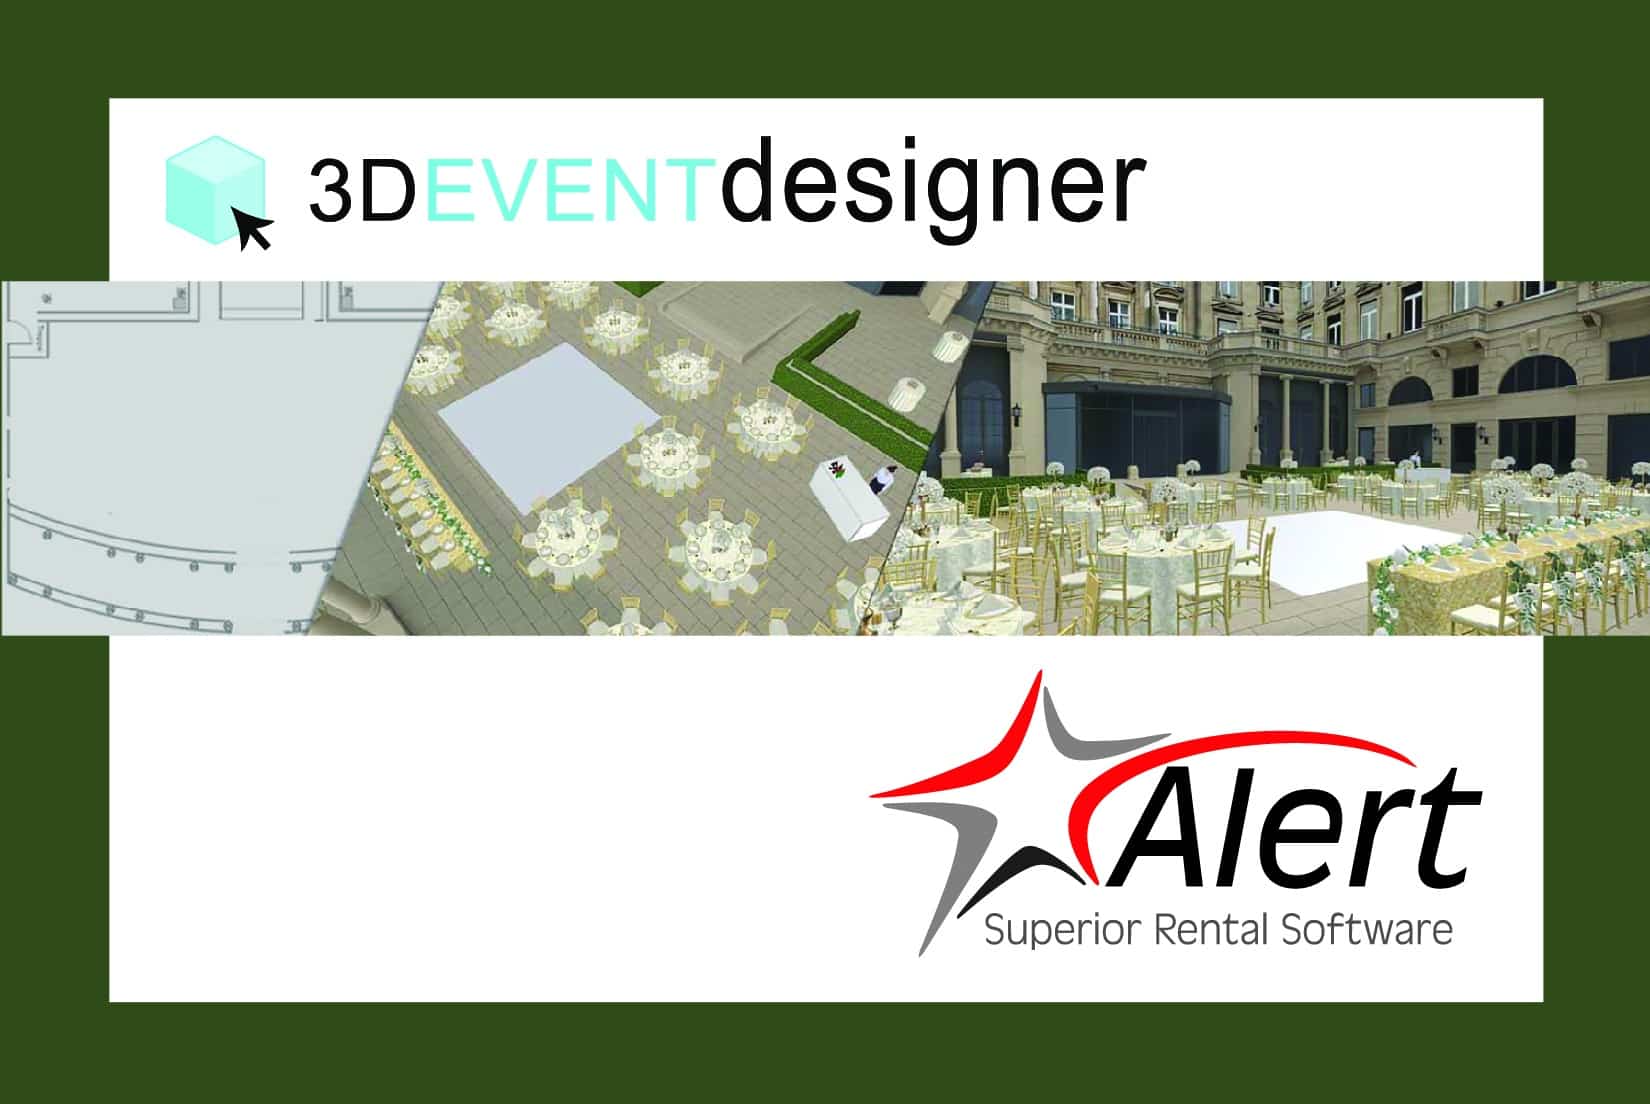 Alert Rental's 3D Event Designer Integration